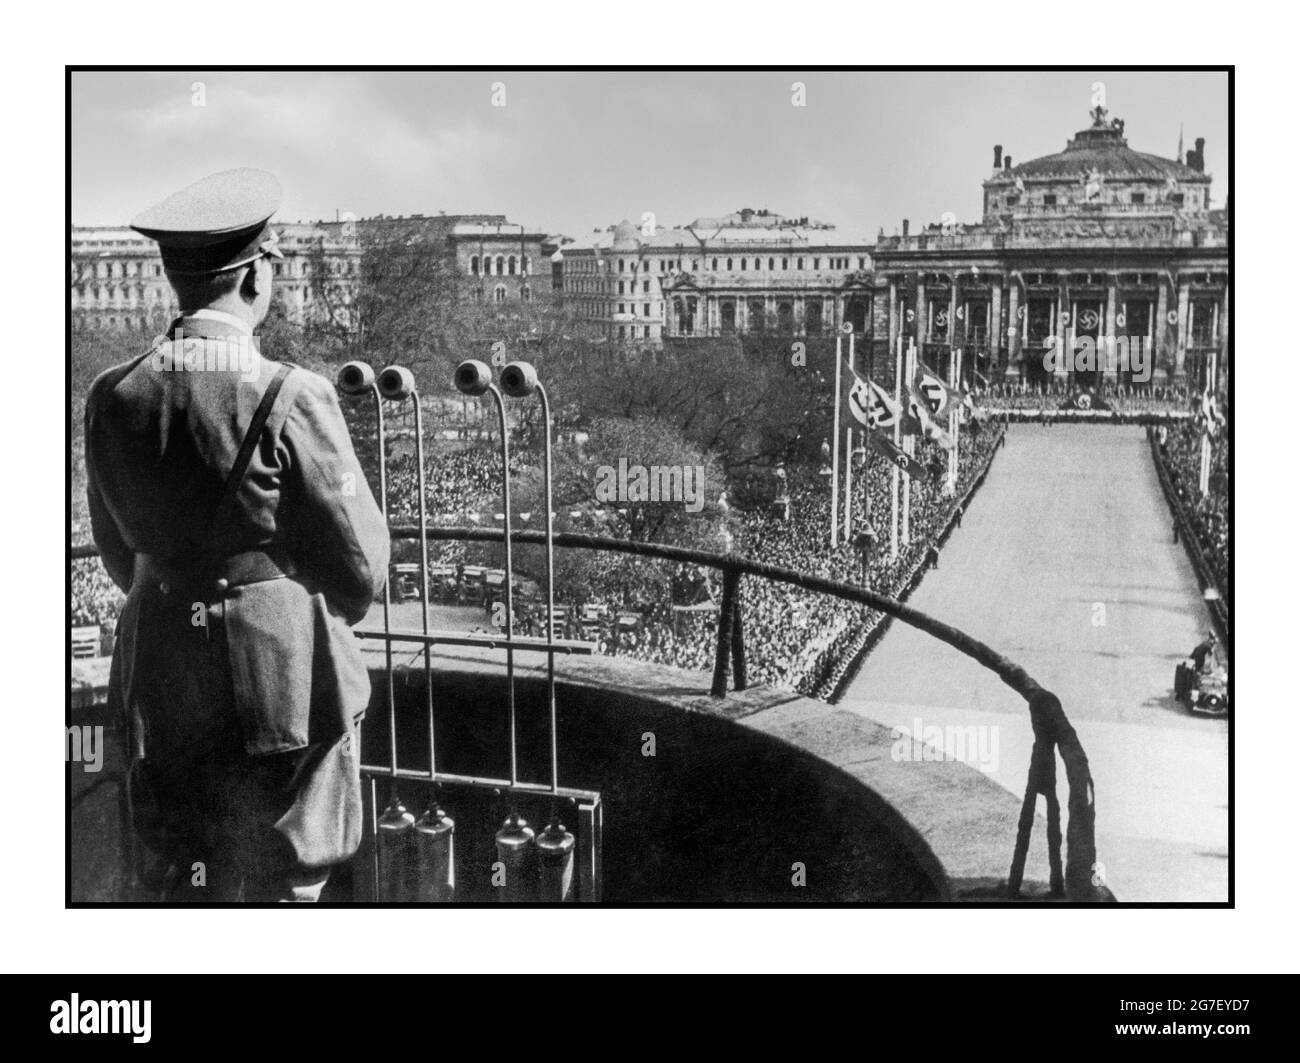 ADOLF HITLER MICROFONI VIENNA AUSTRIA DOPO ANSCHLUSS MARZO 15 1938 Adolf Hitler in uniforme si rivolge al popolo viennese dal balcone del municipio di Vienna aiutato dai microfoni trasmessi 15 marzo 1938 a Vienna, Austria. L'annessione di Anschluss ebbe luogo il 12 marzo 1938 Foto Stock